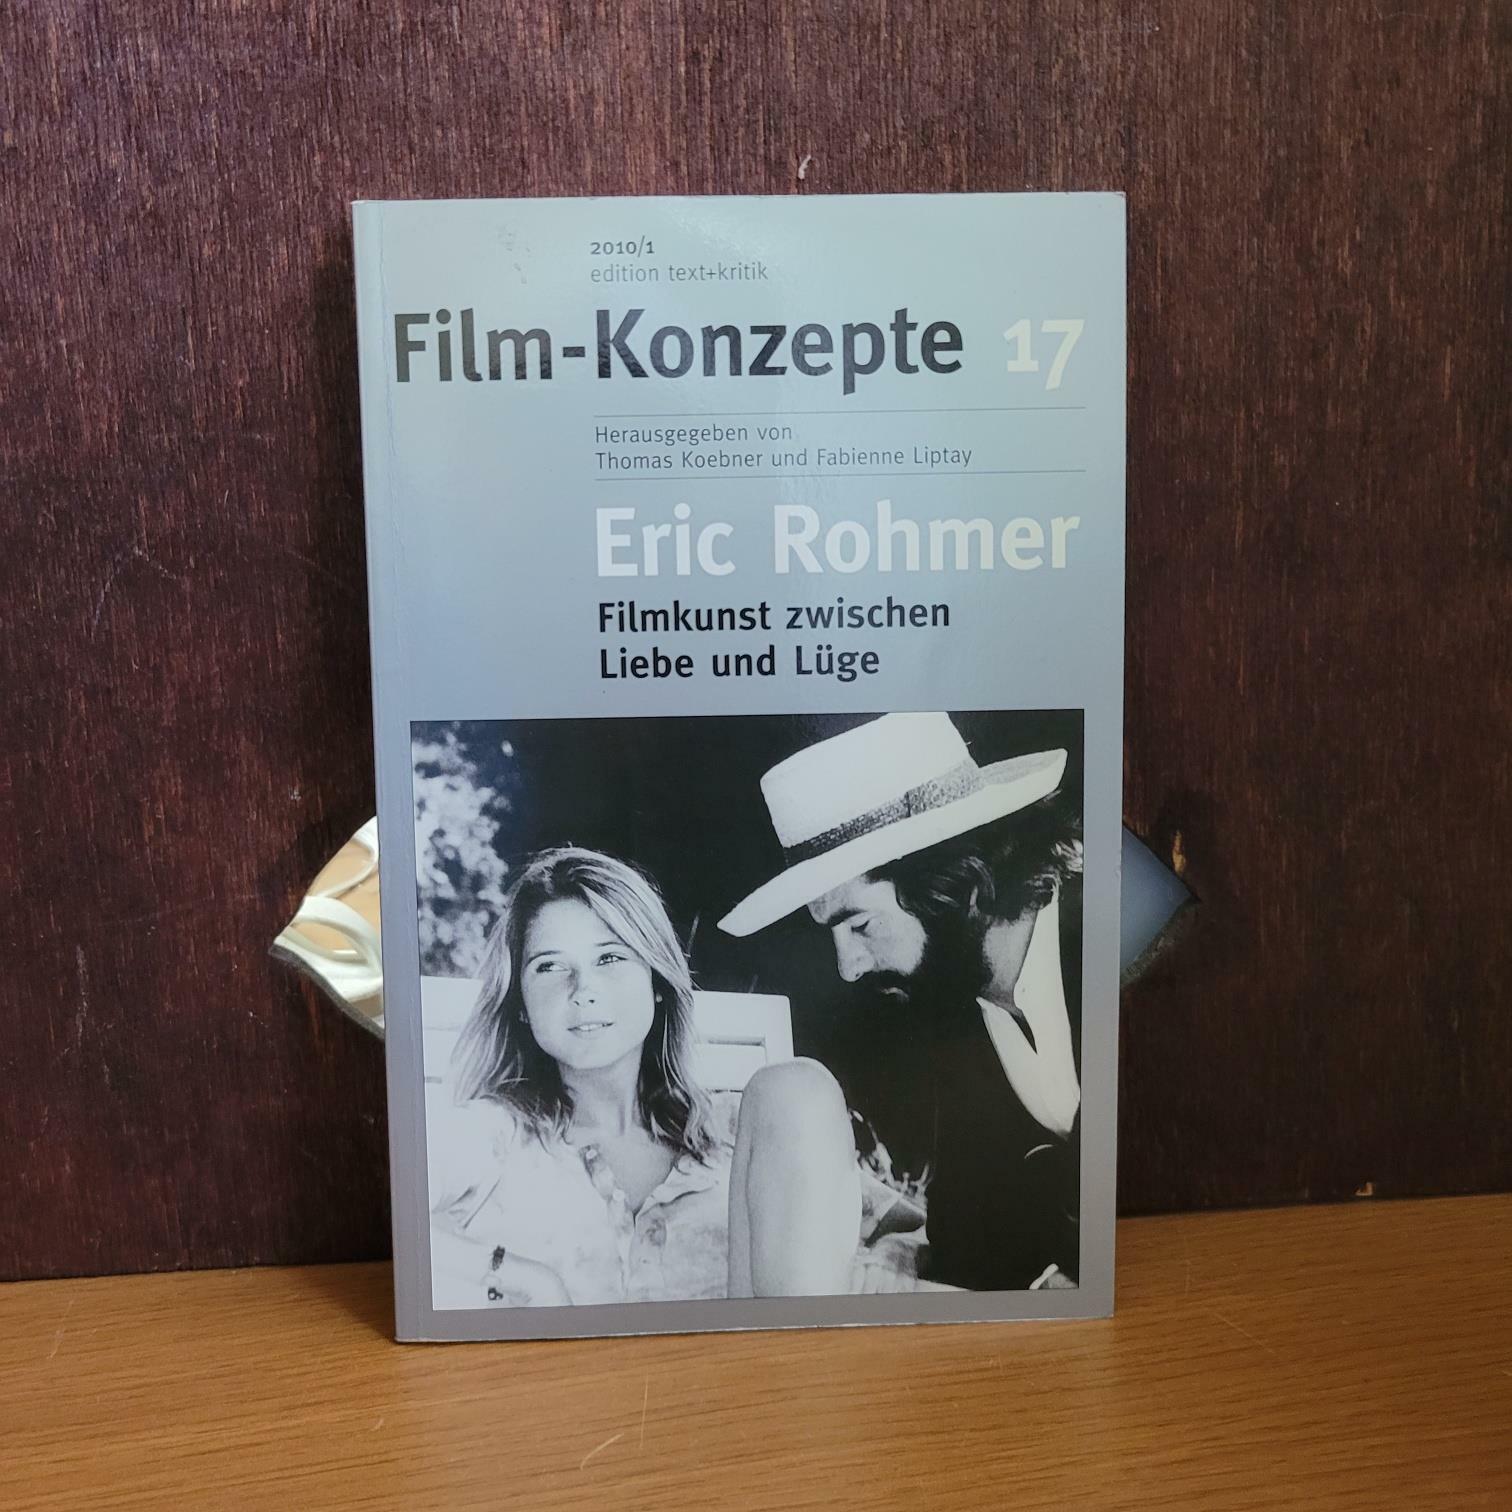 [중고] edition text+kritik) Film-Konzepte 17 Eric Rohmer Filmkunst zwischen Liebe und Lüge [상급/실사진 참고] (paperback)